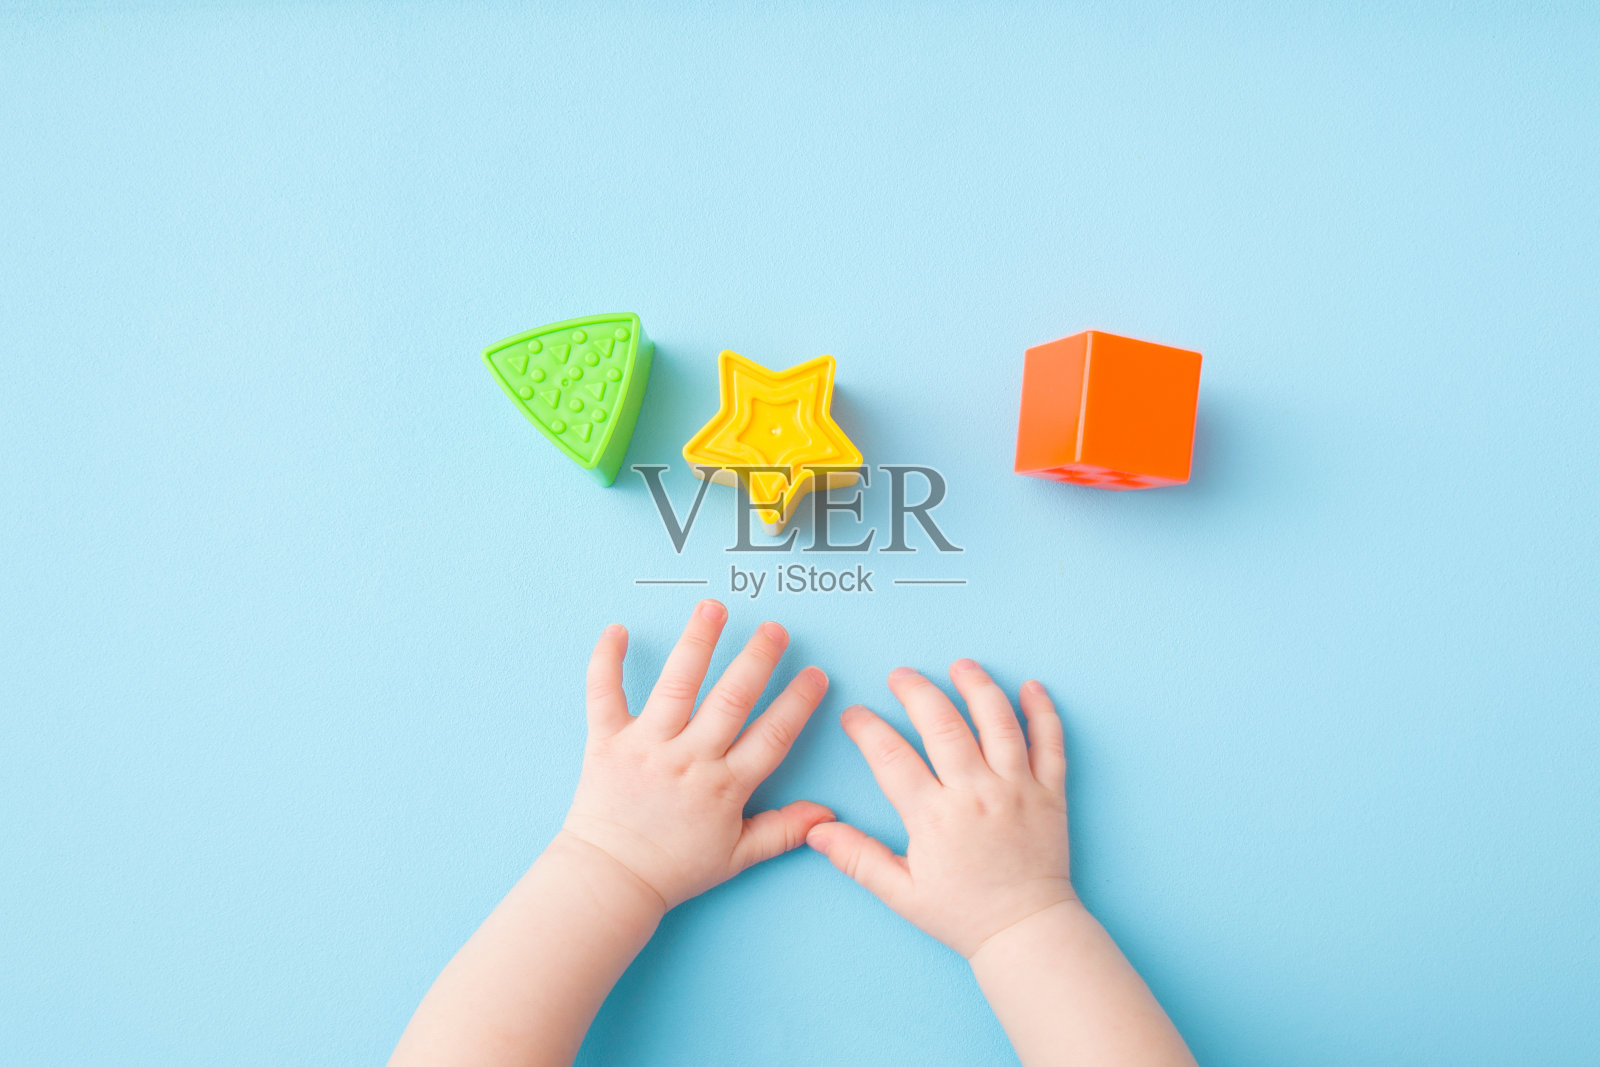 婴儿的手玩绿色的三角形，黄色的星星和橙色的方形在浅蓝色的背景。柔和的颜色。特写镜头。给小孩子的发展玩具。自顶向下的观点。照片摄影图片